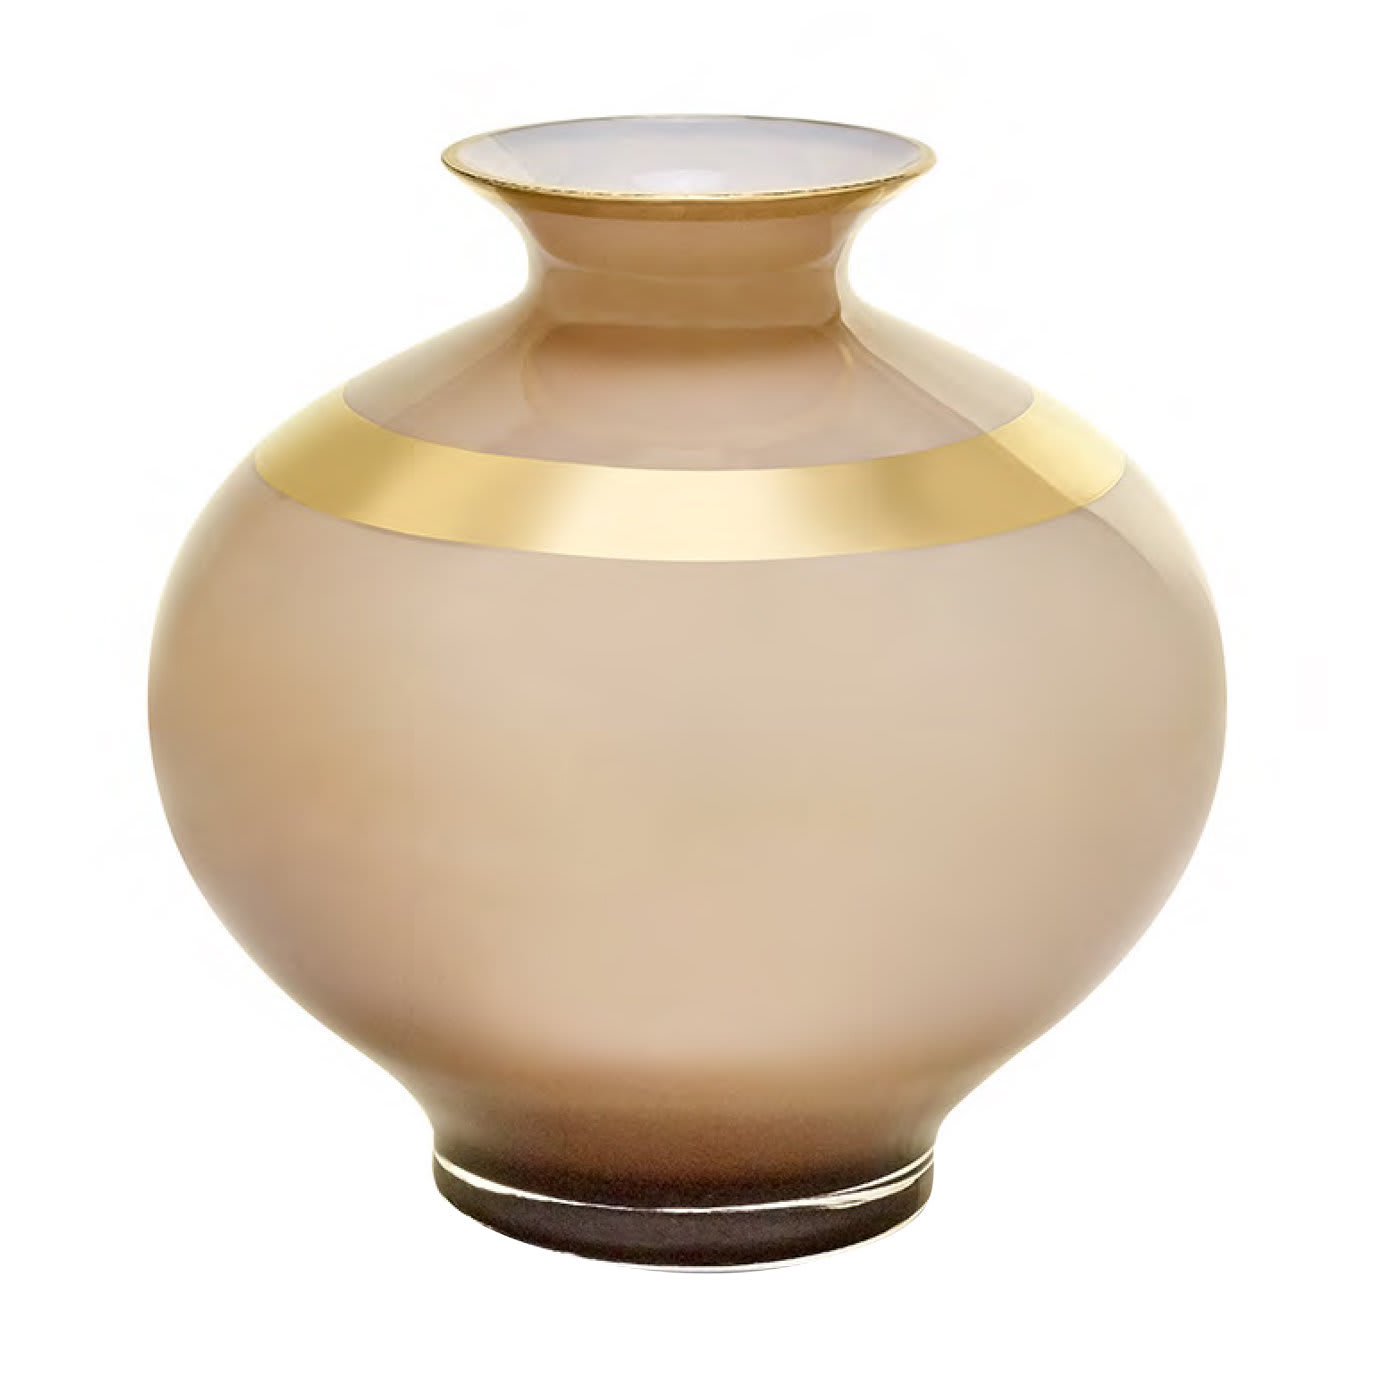 Saffo Small Transparent Amphora - Pure 24k Gold - Mara Dal Cin for DFN